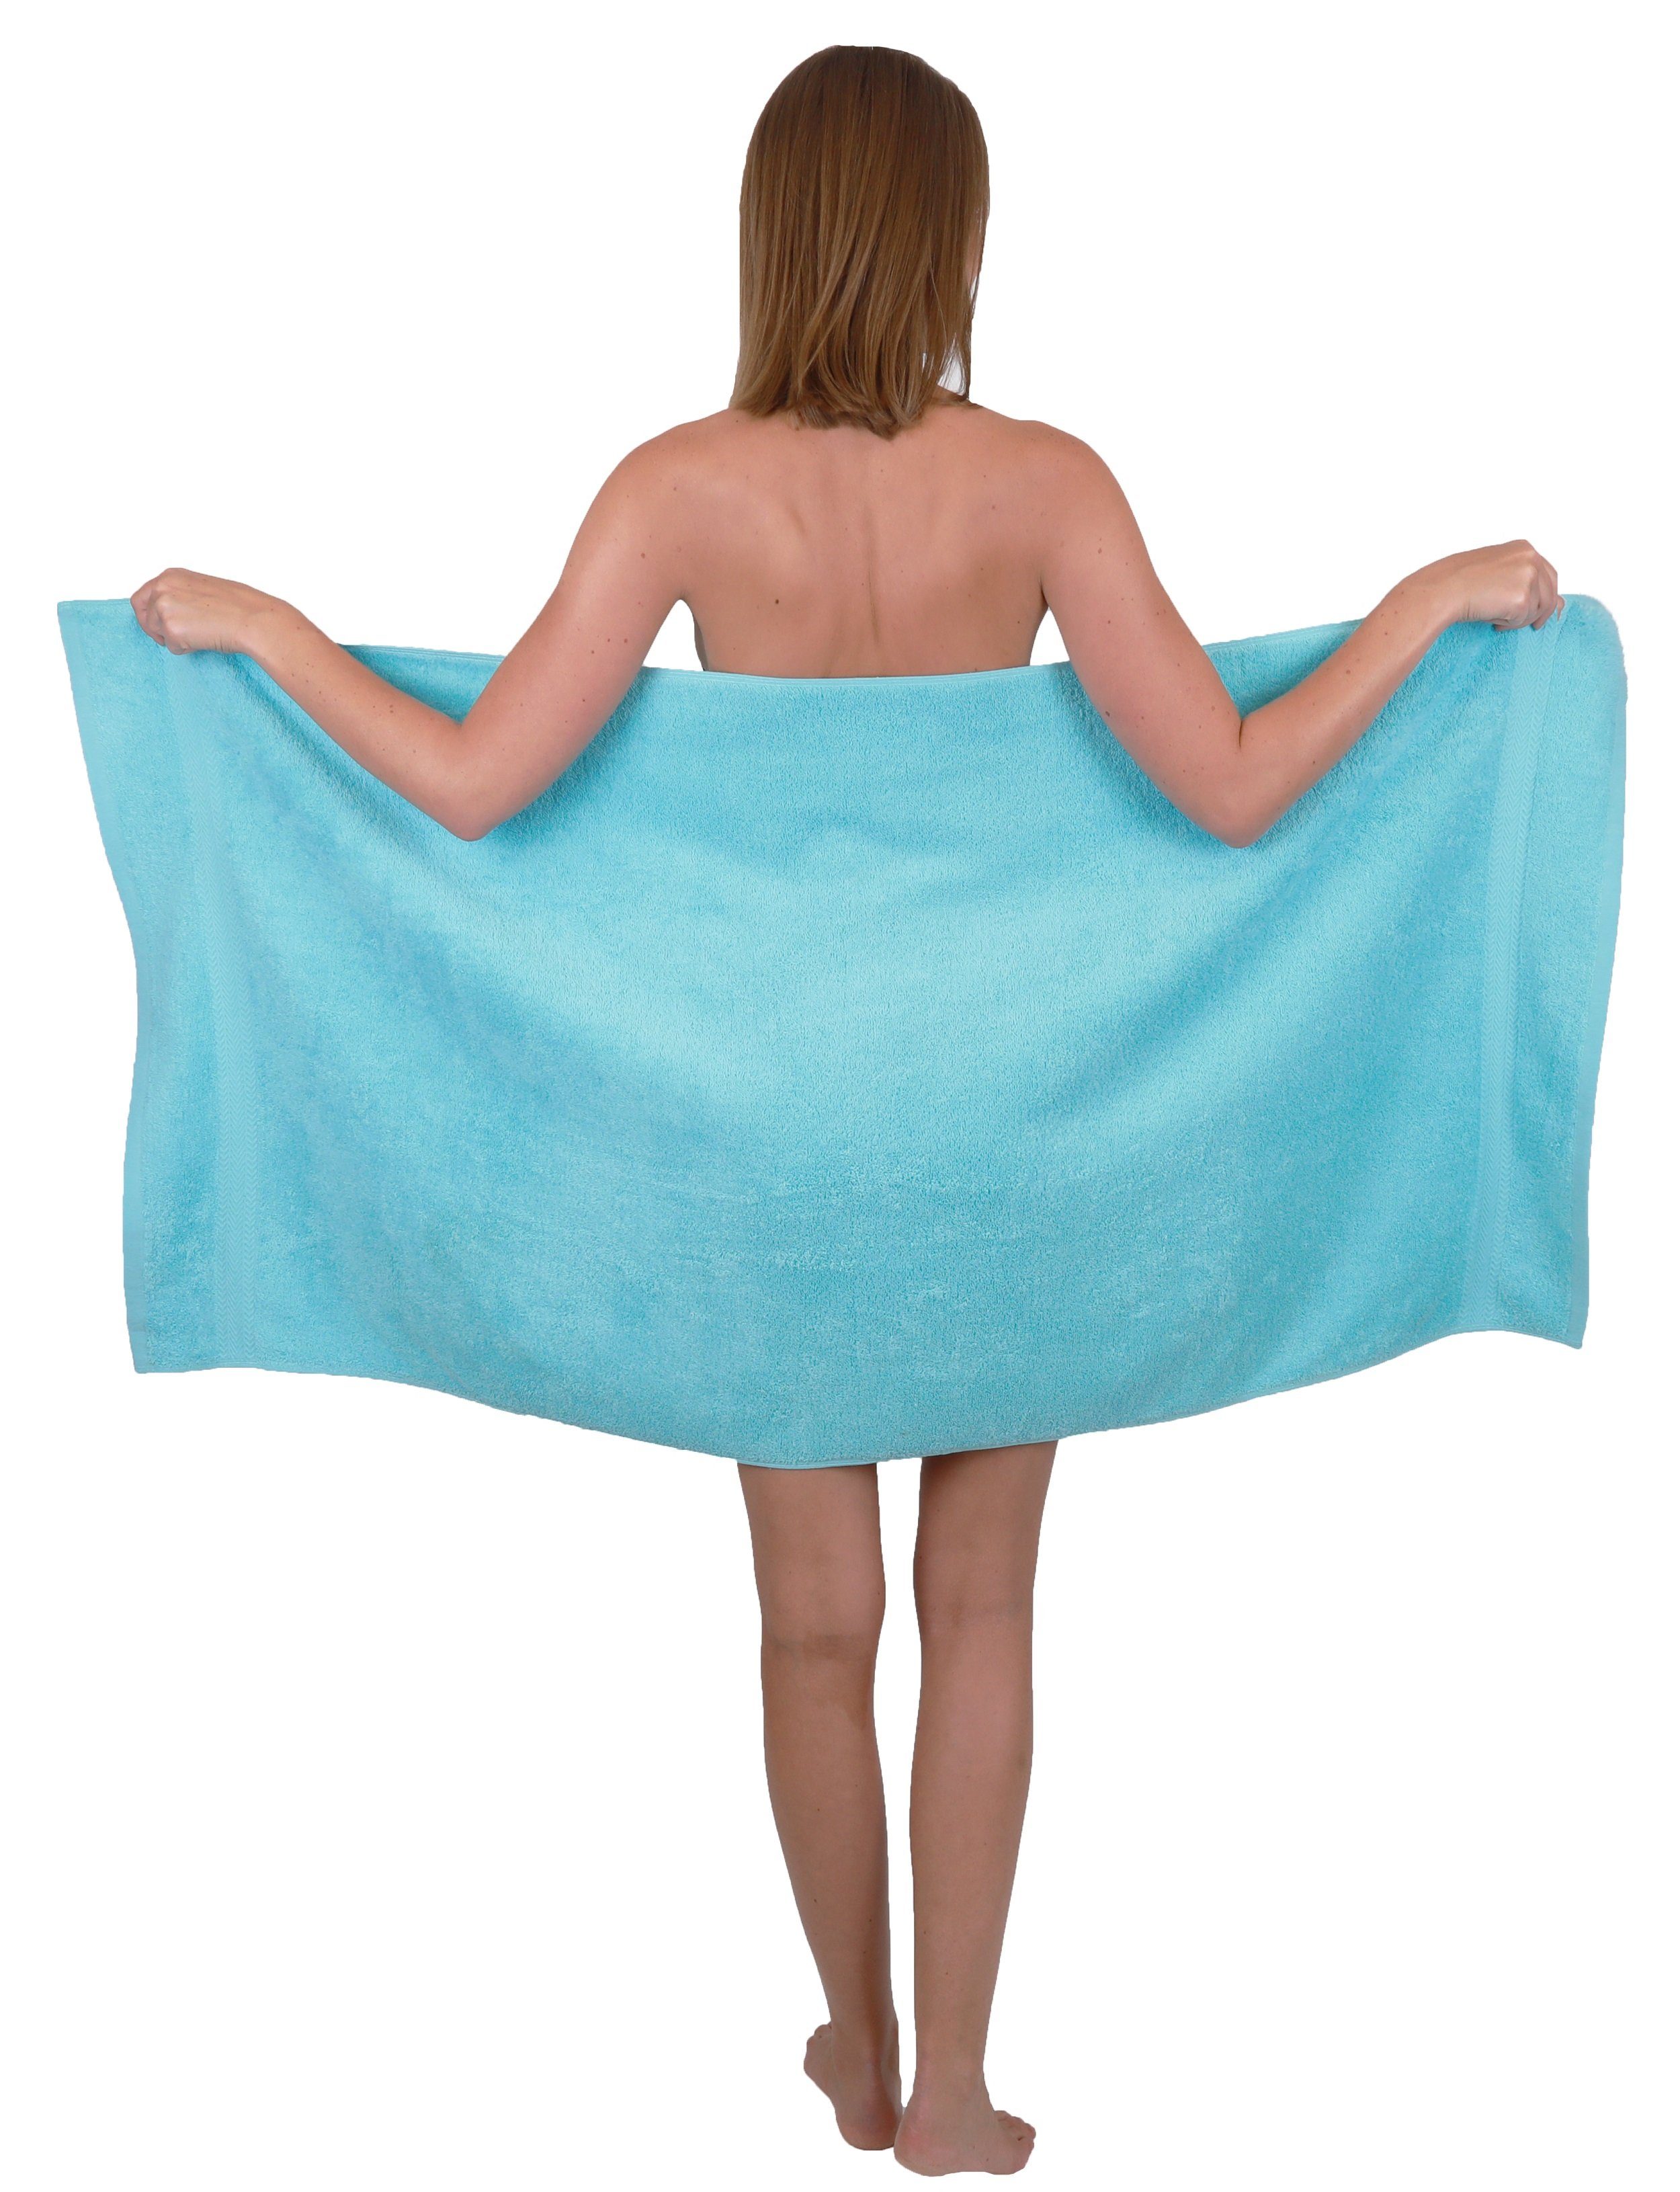 Betz Handtuch Set Duschtücher 2 Baumwolle Premium 6-TLG. türkis, 100% Handtuch-Set Farbe Handtücher smaragdgrün 100% 4 und Baumwolle